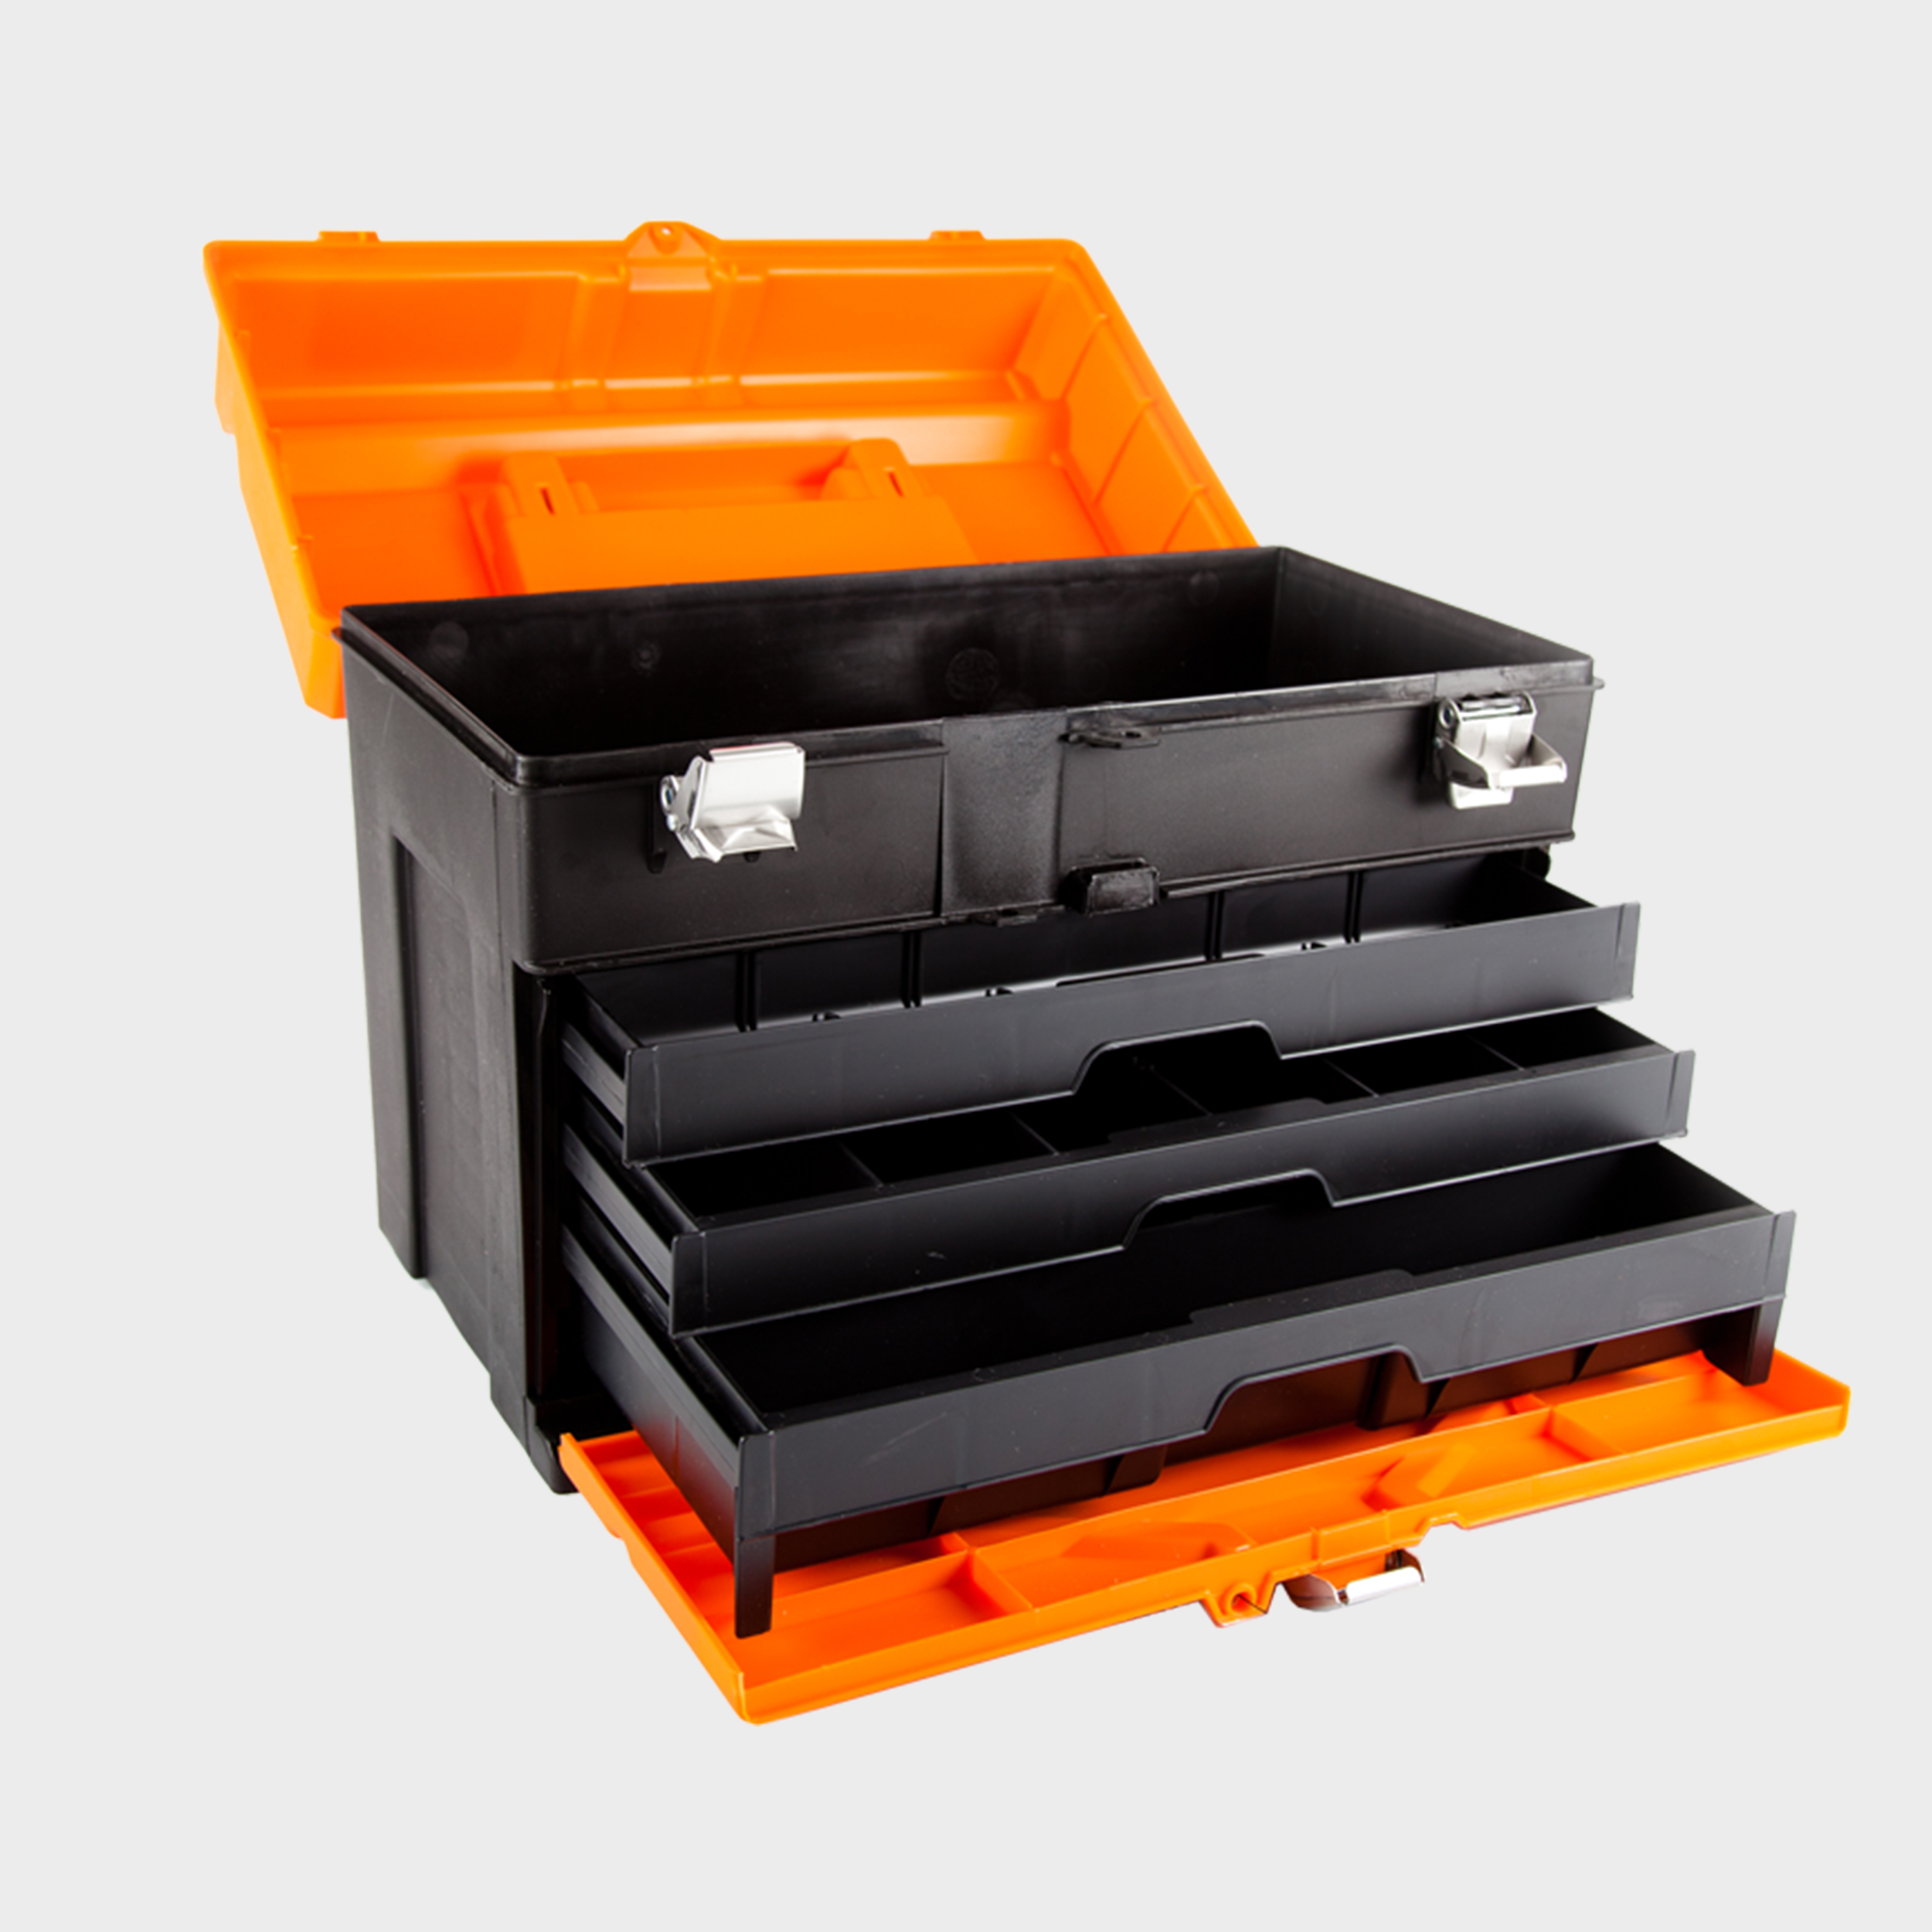 Caja de herramientas BAHCO plástico resistente